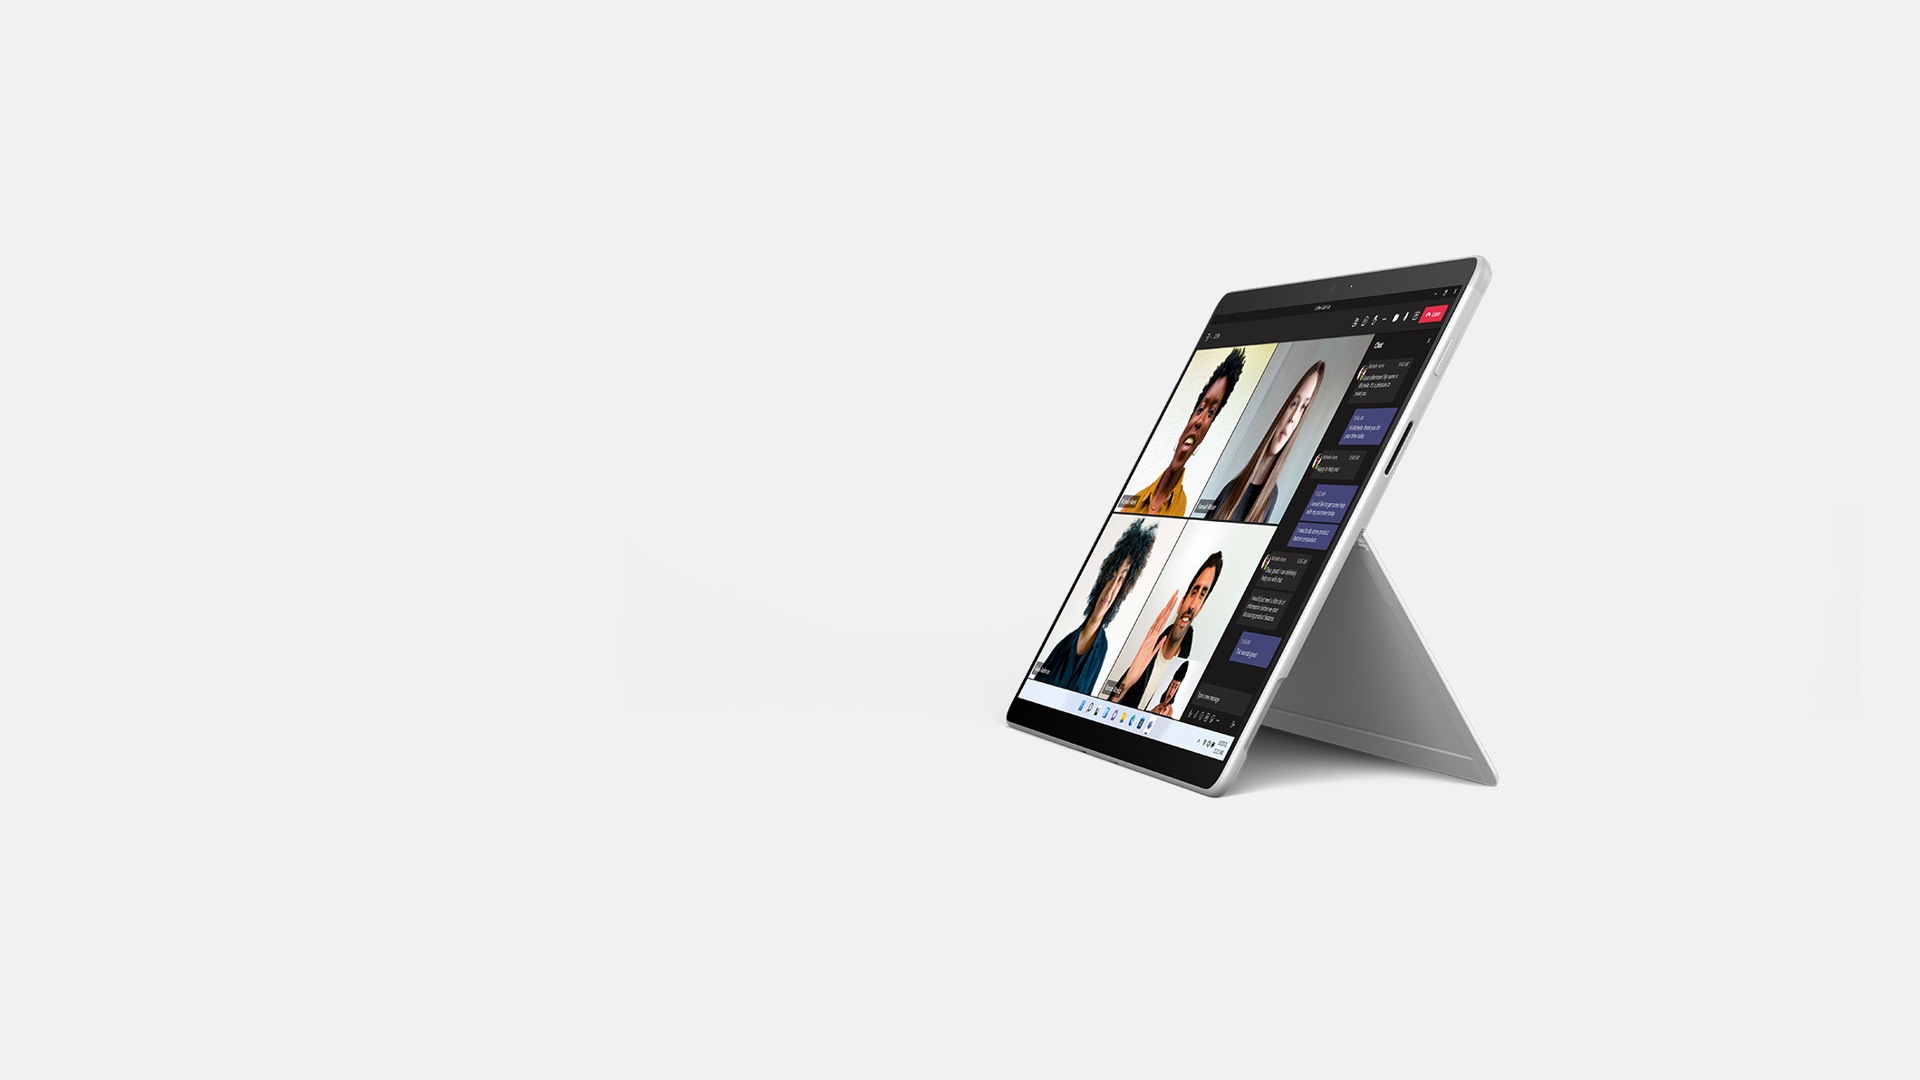 جهاز Surface Pro X معروض في وضع الحامل.